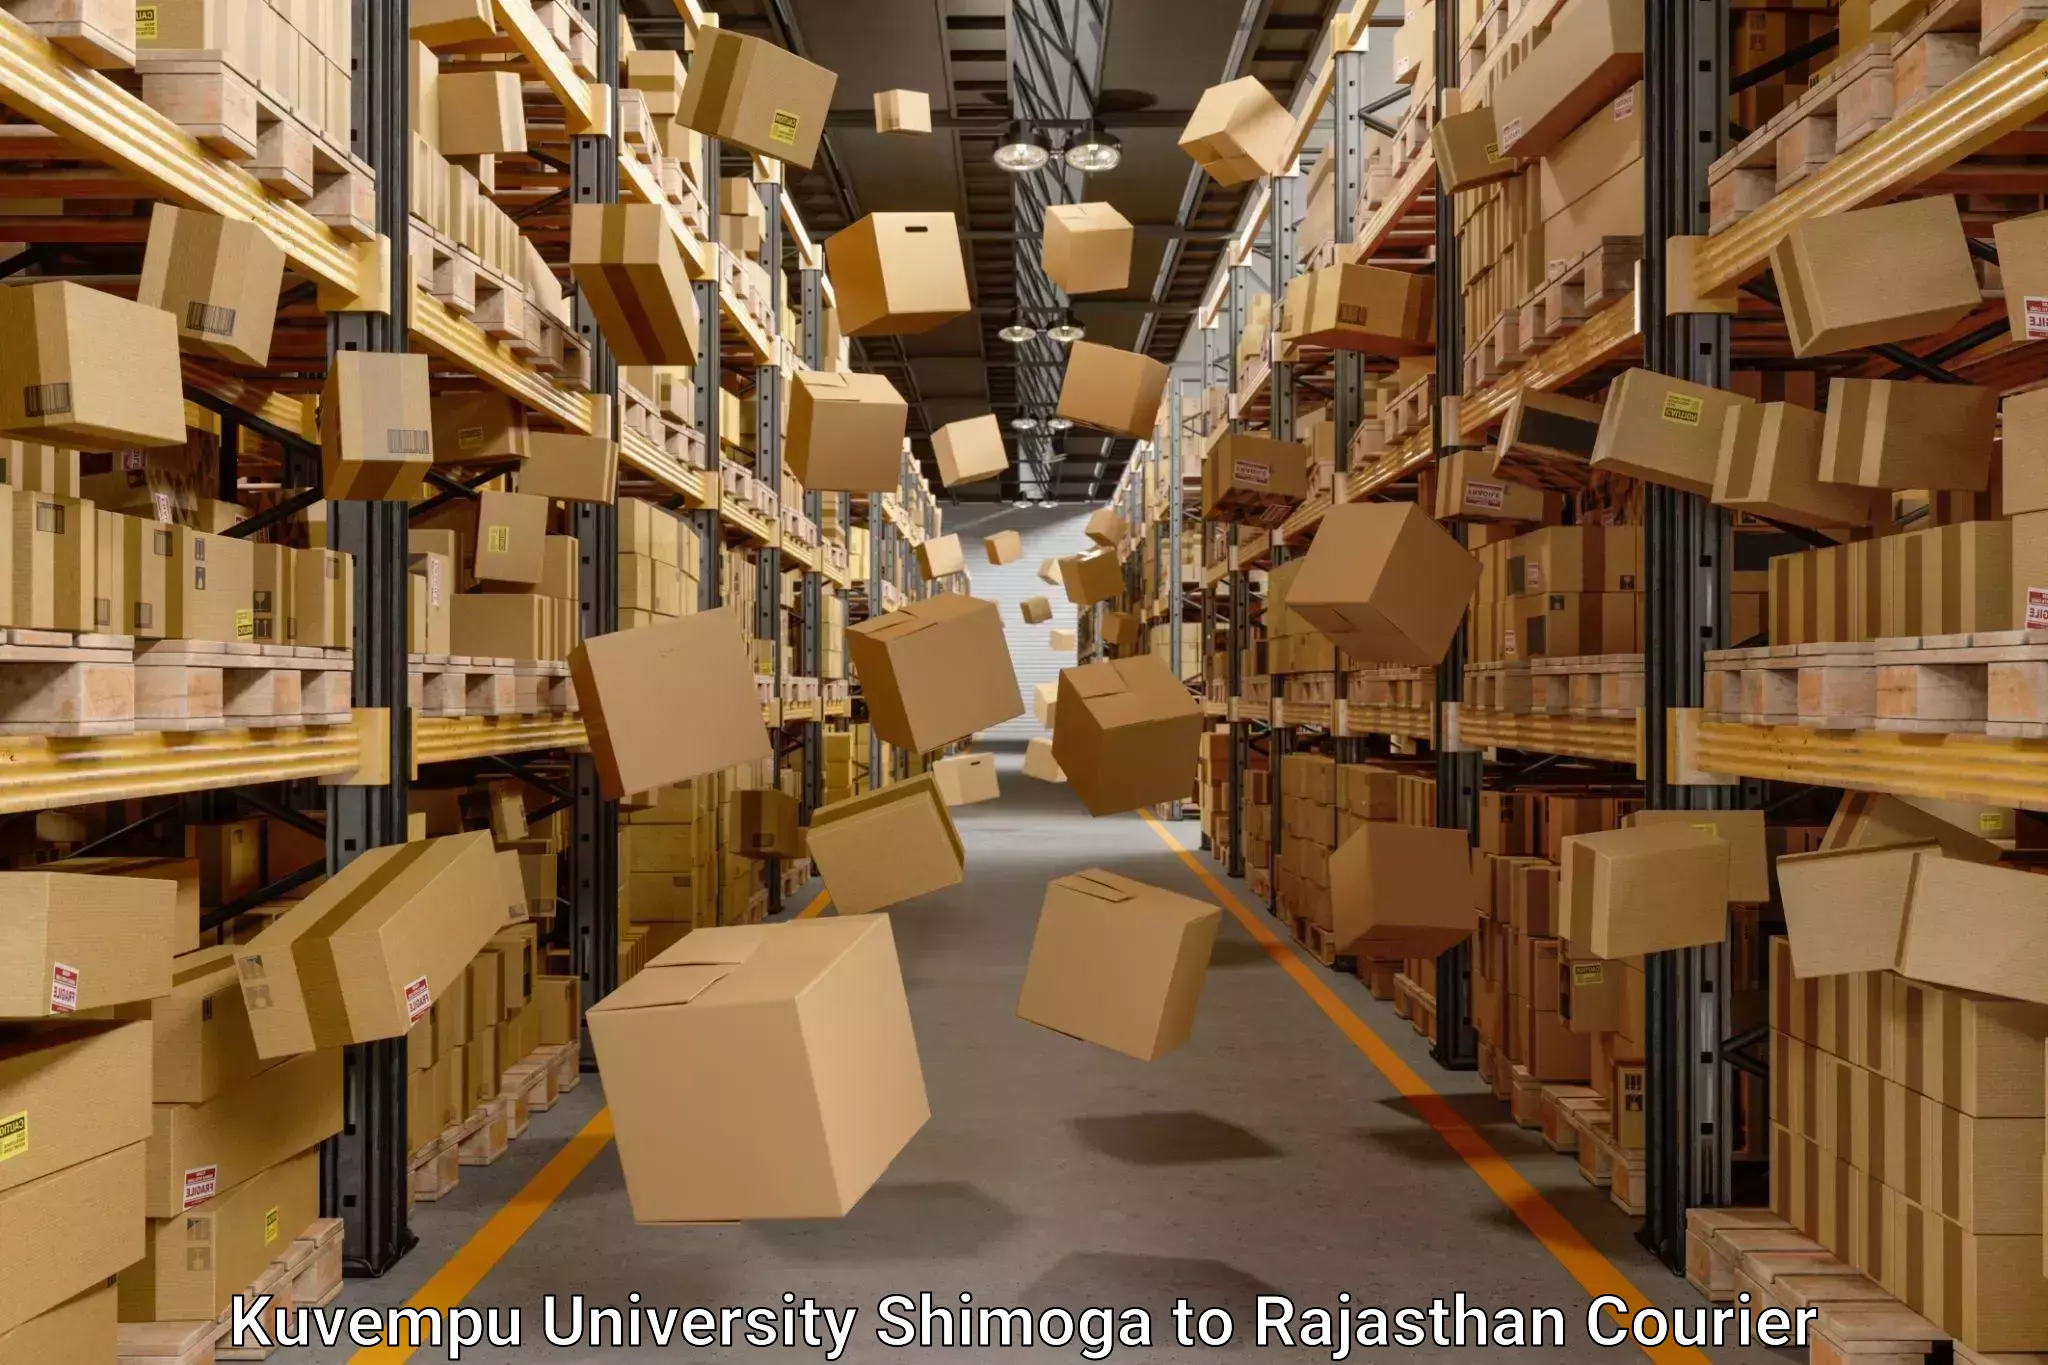 Furniture moving plans Kuvempu University Shimoga to Rajasthan